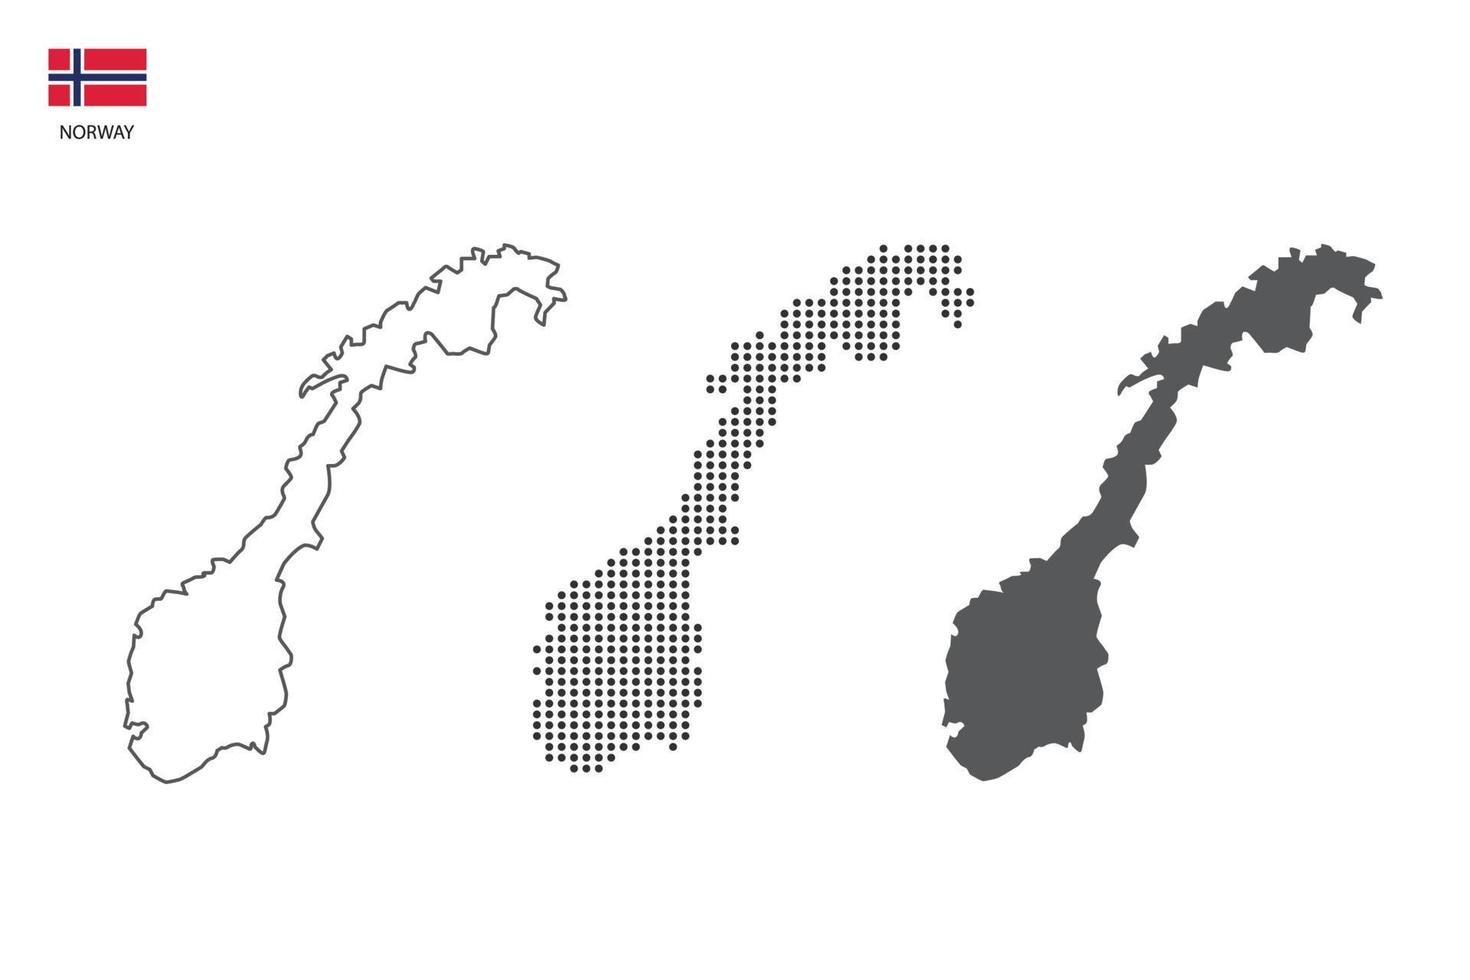 3 versiones del vector de la ciudad del mapa de noruega por estilo de simplicidad de contorno negro delgado, estilo de punto negro y estilo de sombra oscura. todo en el fondo blanco.